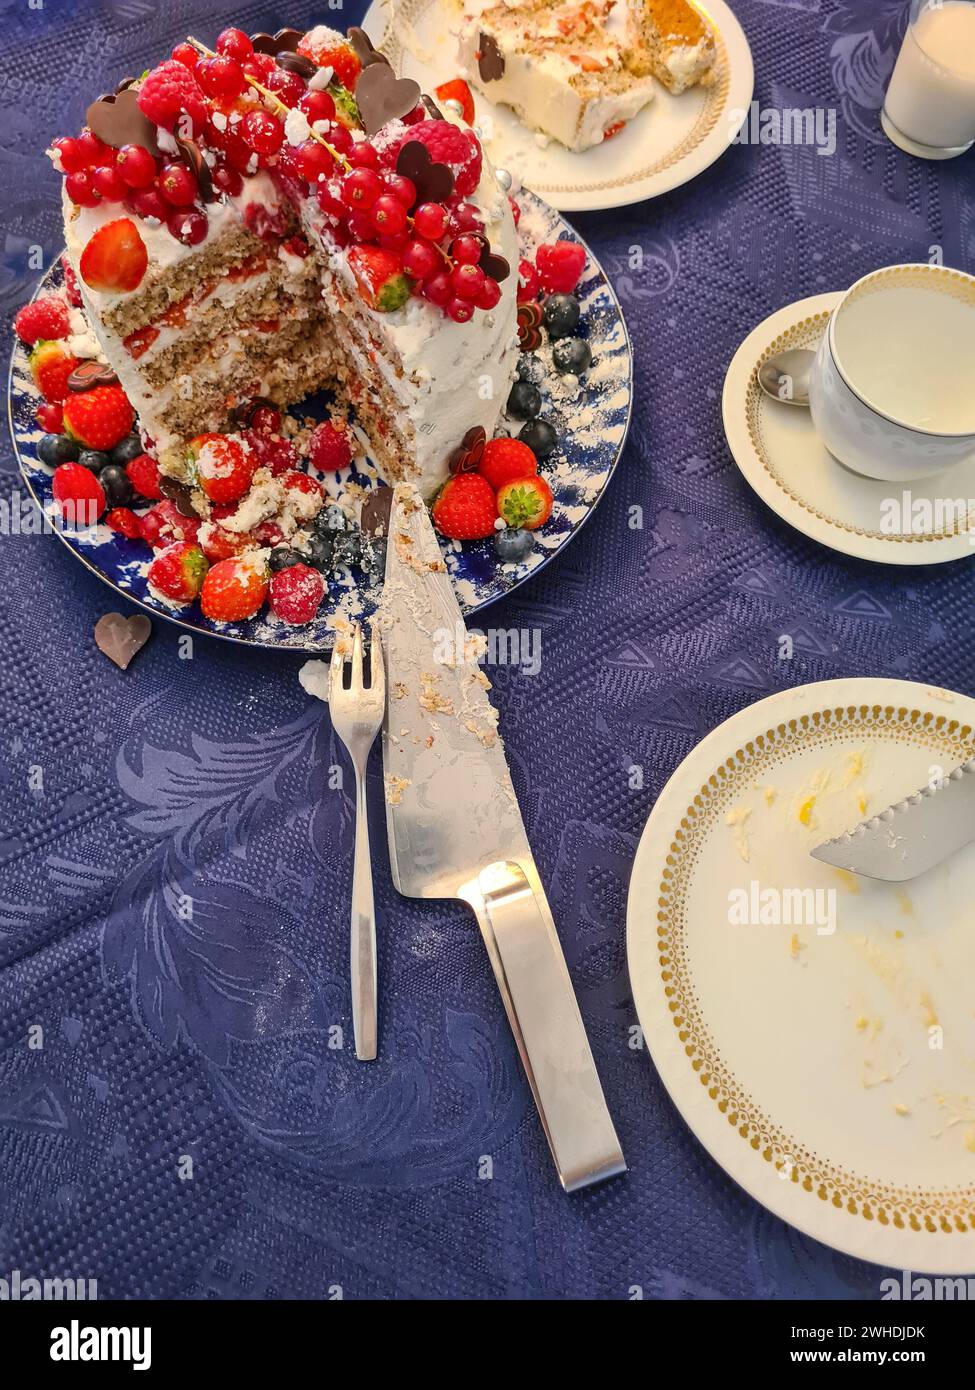 Una torta cremosa natalizia con frutta come fragole, lamponi, ribes e mirtilli mentre la decorazione viene tagliata e mostra la sezione trasversale della torta e i suoi strati individuali Foto Stock